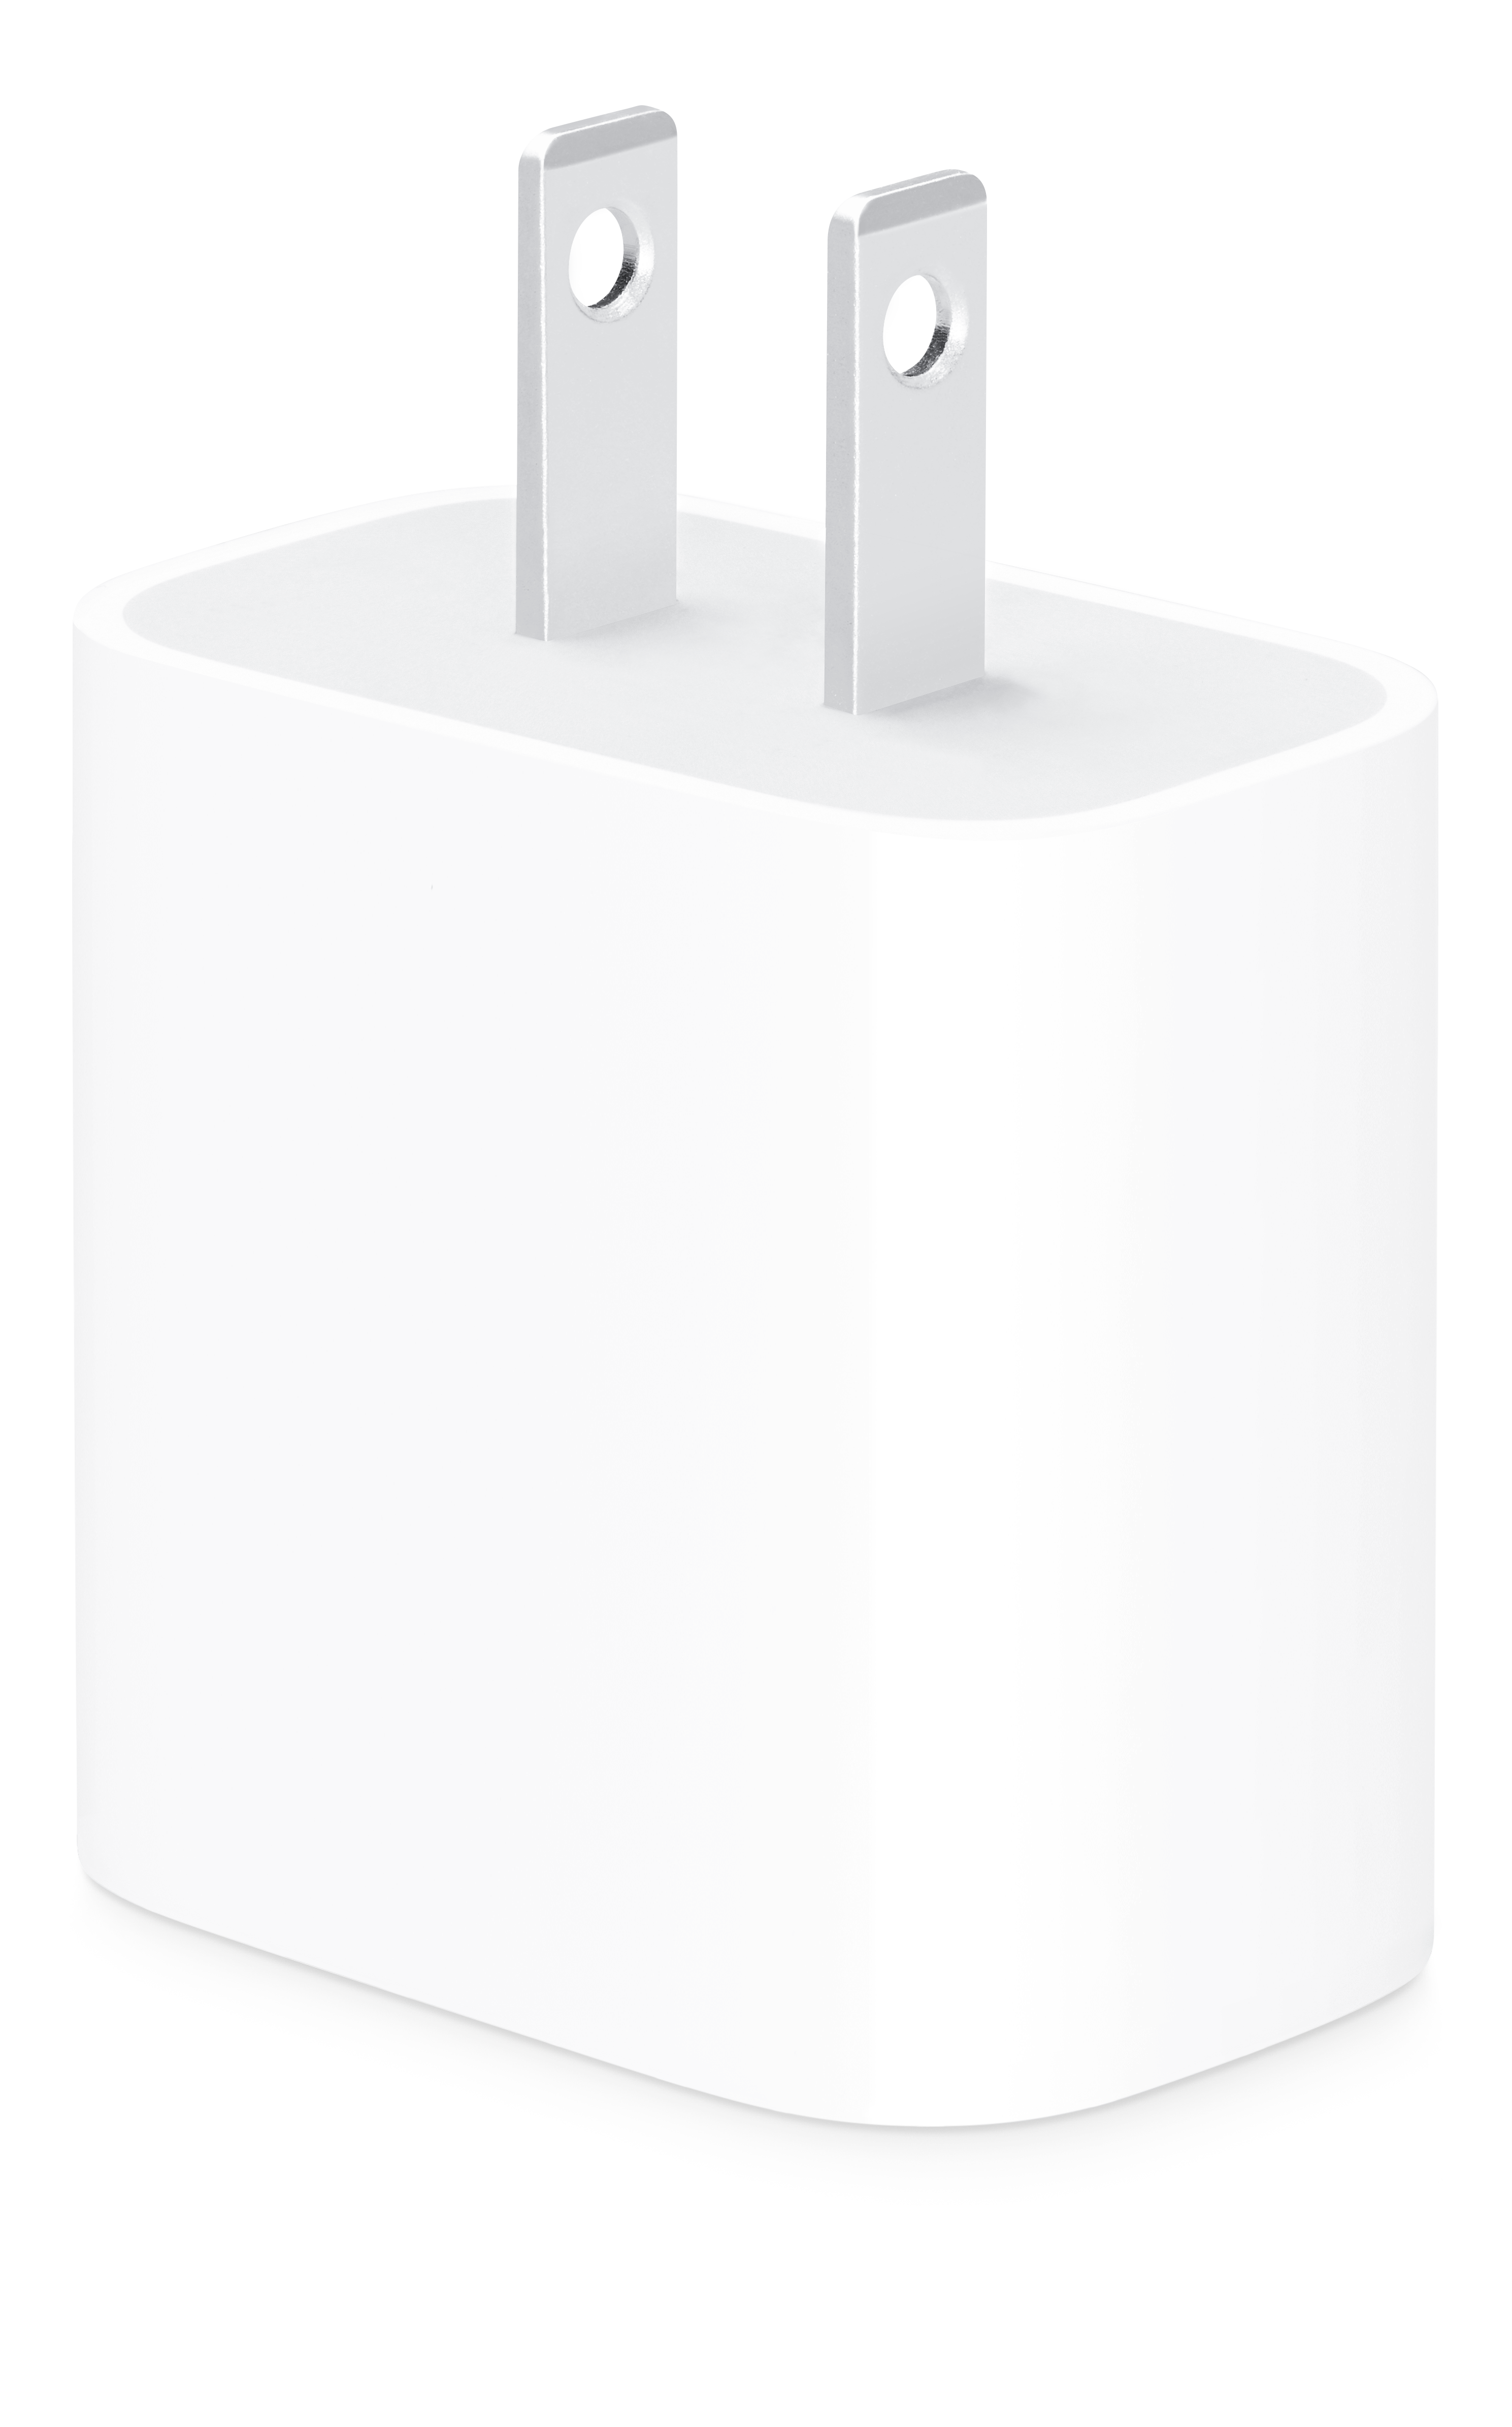 Cargador Apple - Corriente USB-C de 20 W